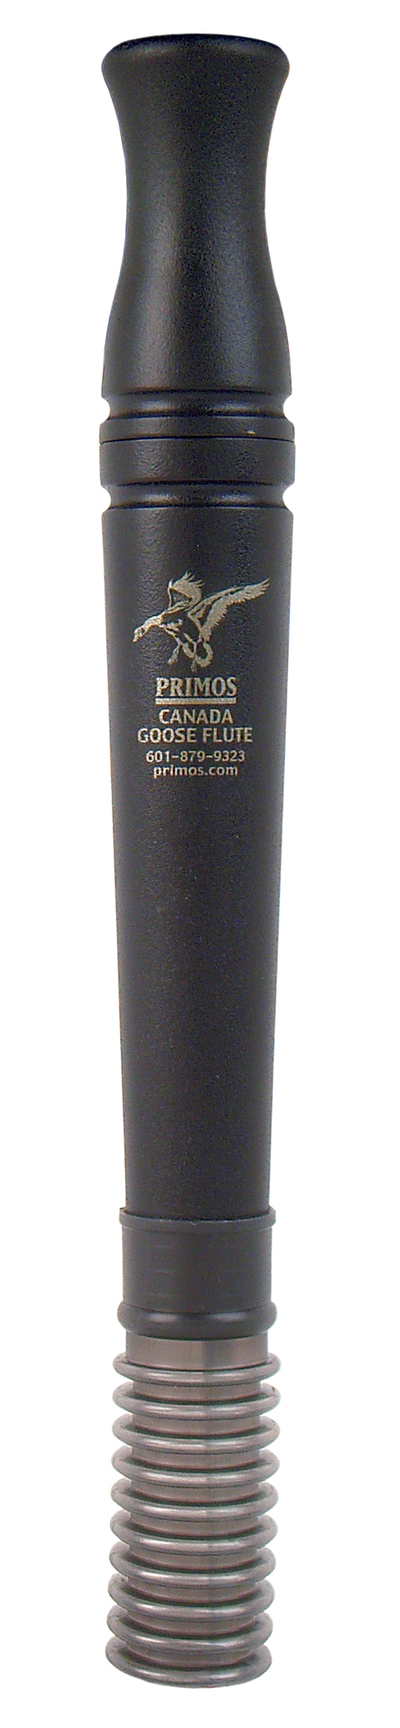 Primos Goose Flute